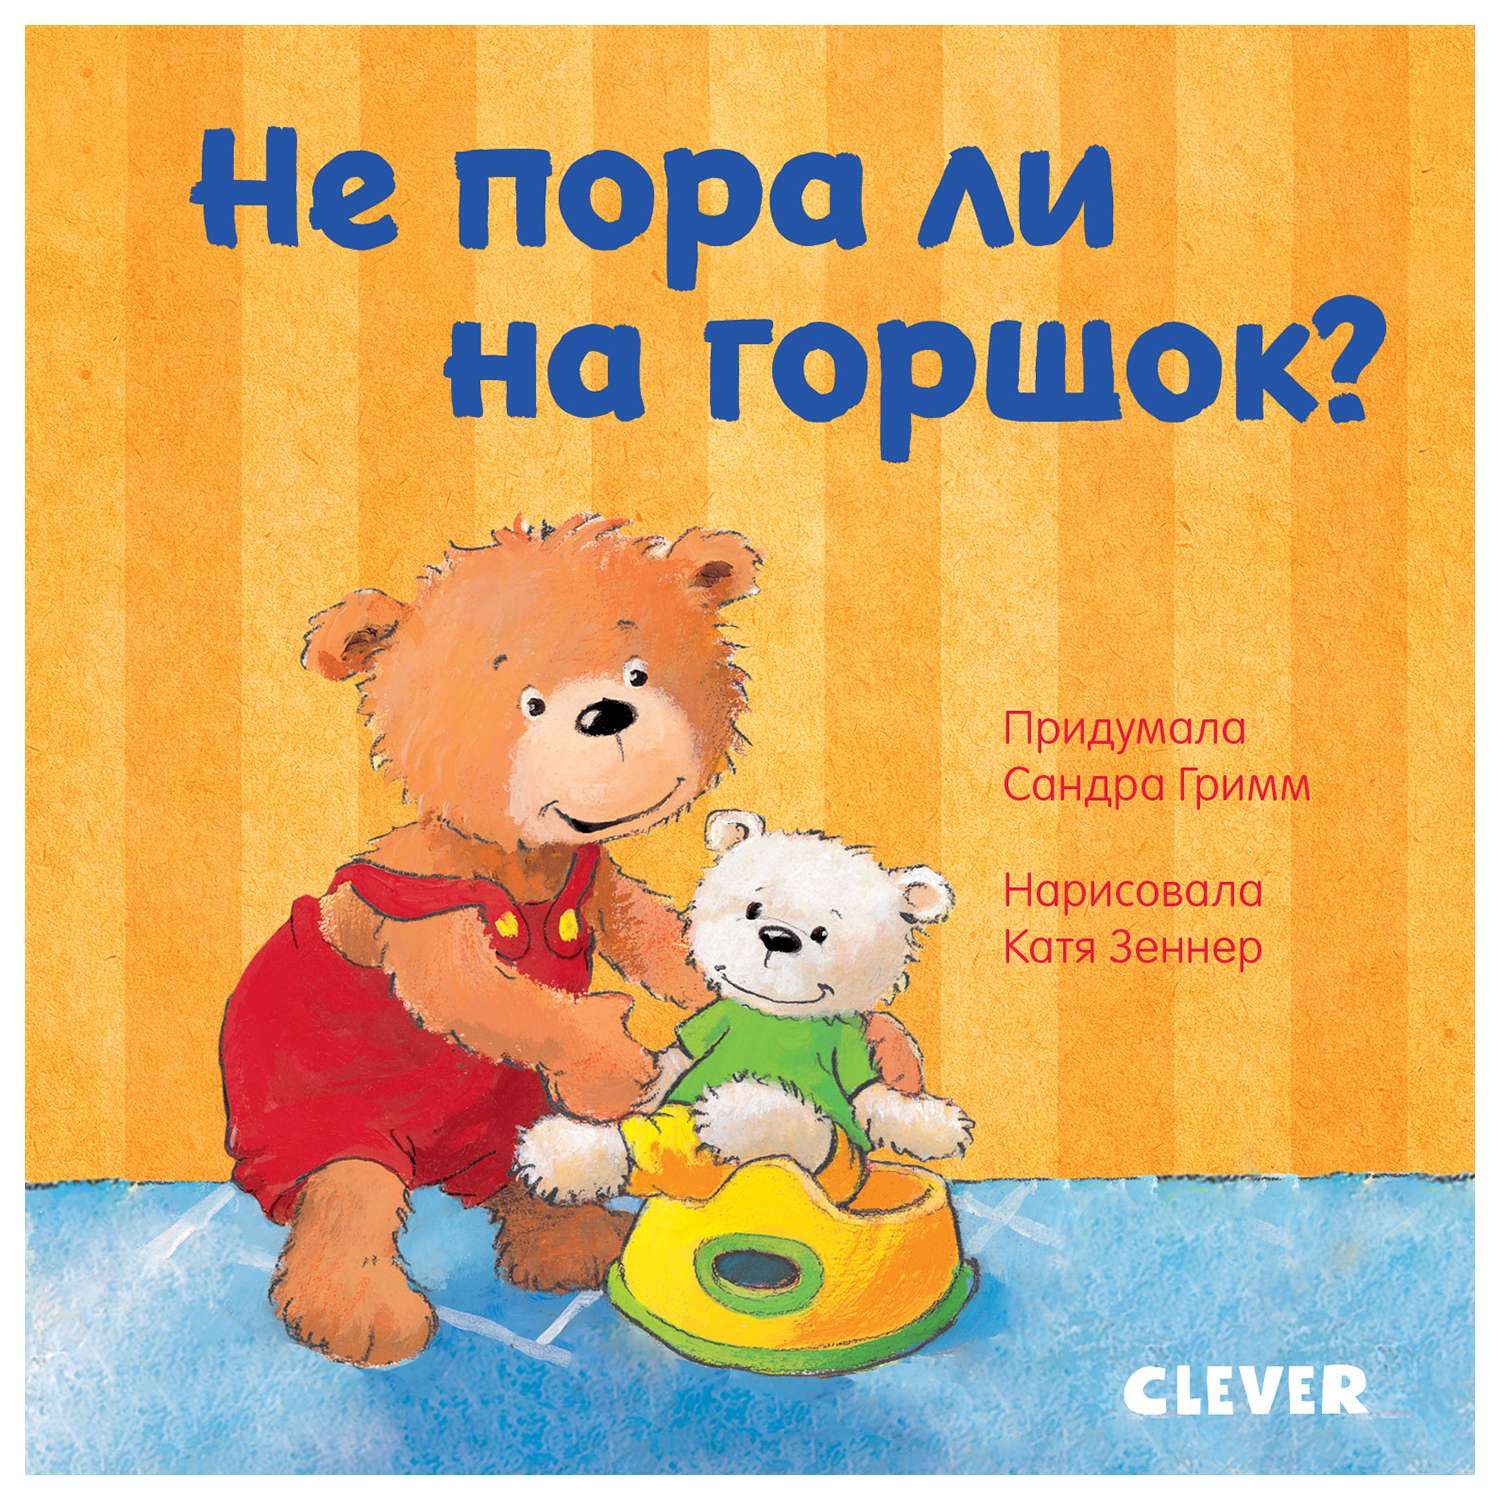 Книга Clever Первые книжки малыша Не пора ли на горшок - фото 1